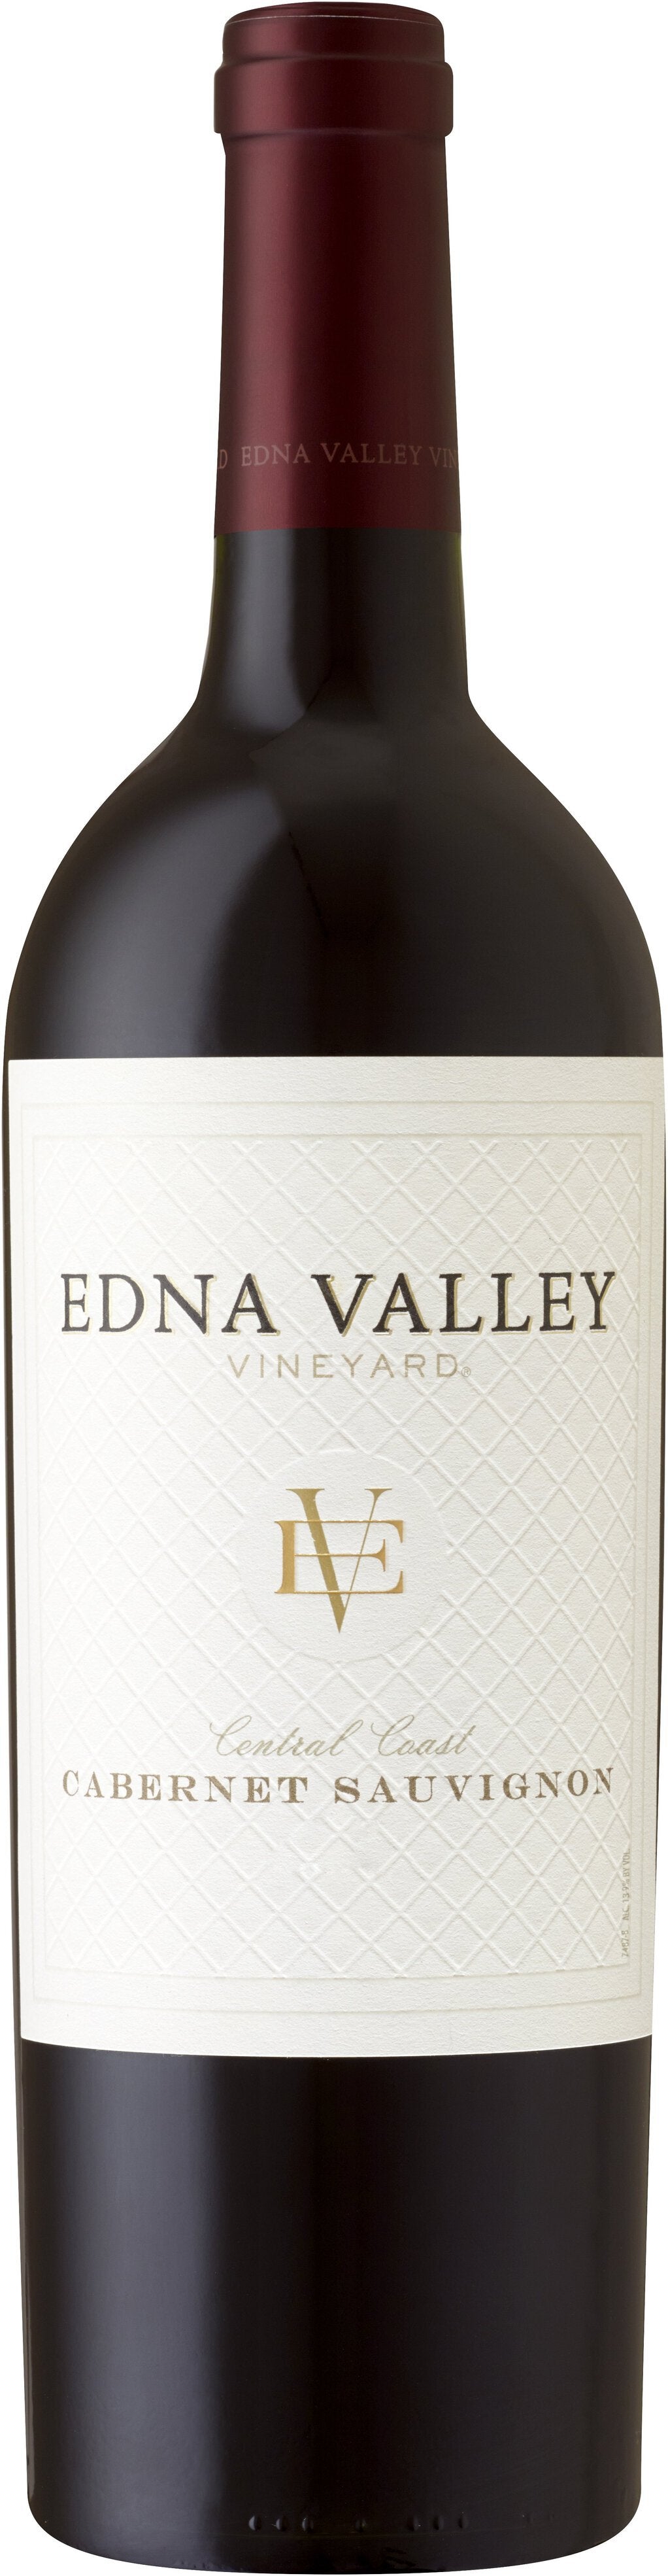 Edna Valley Vineyard Cabernet Sauvignon